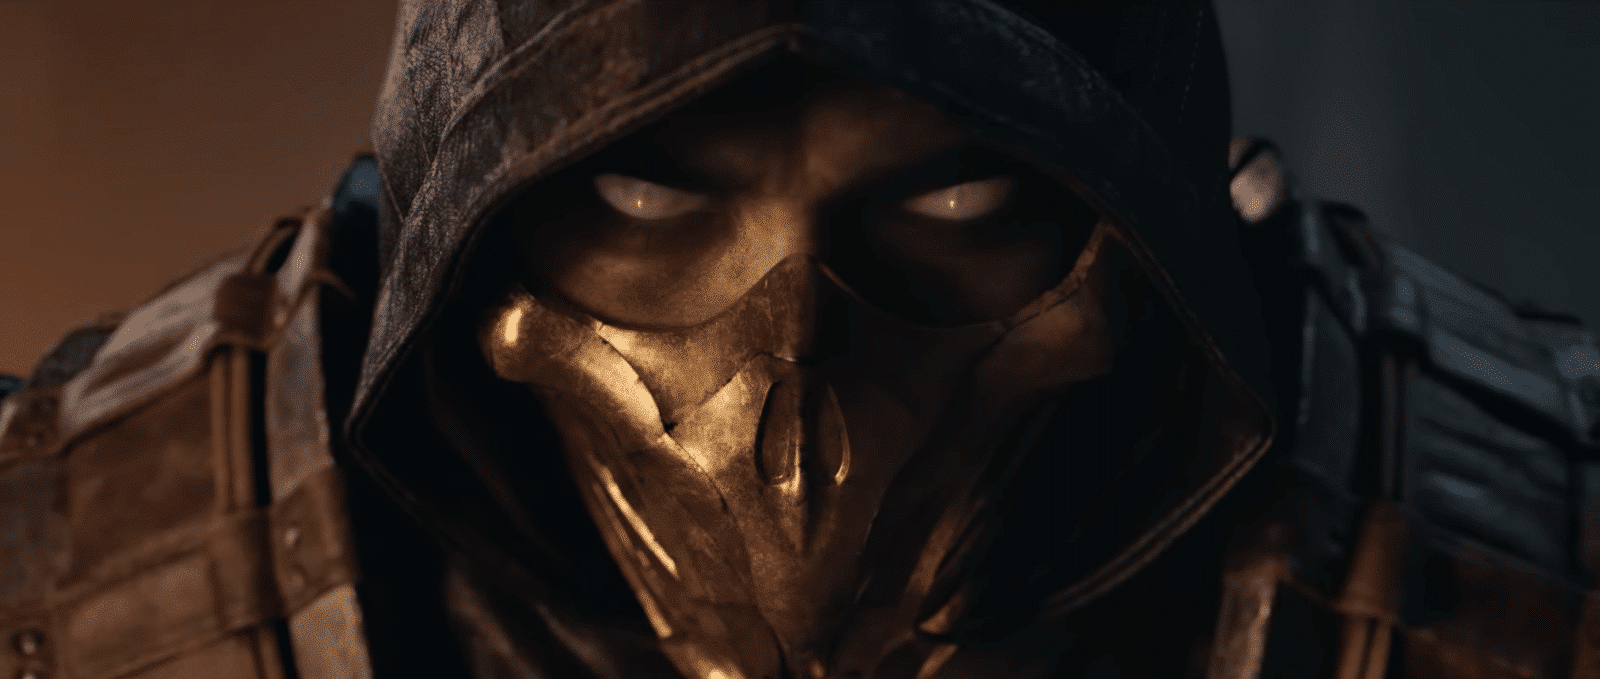 Mortal Kombat - Film release date; 15 Januari 2021 ...